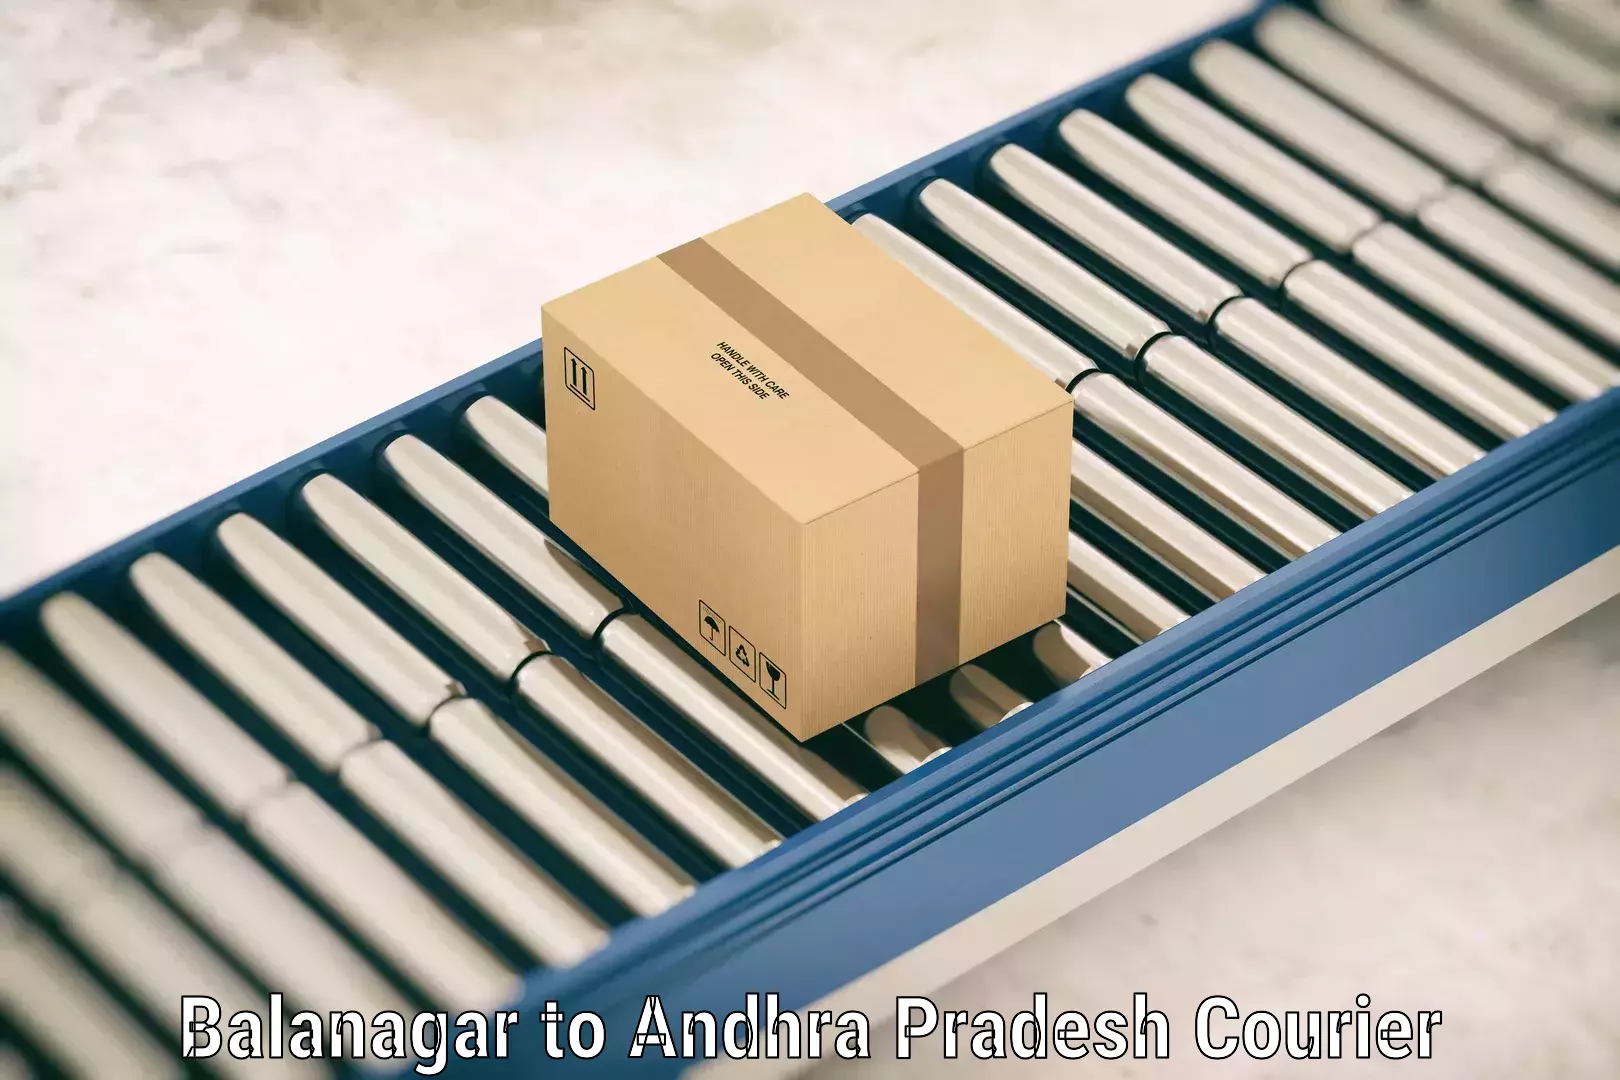 Baggage delivery technology Balanagar to Ichchapuram